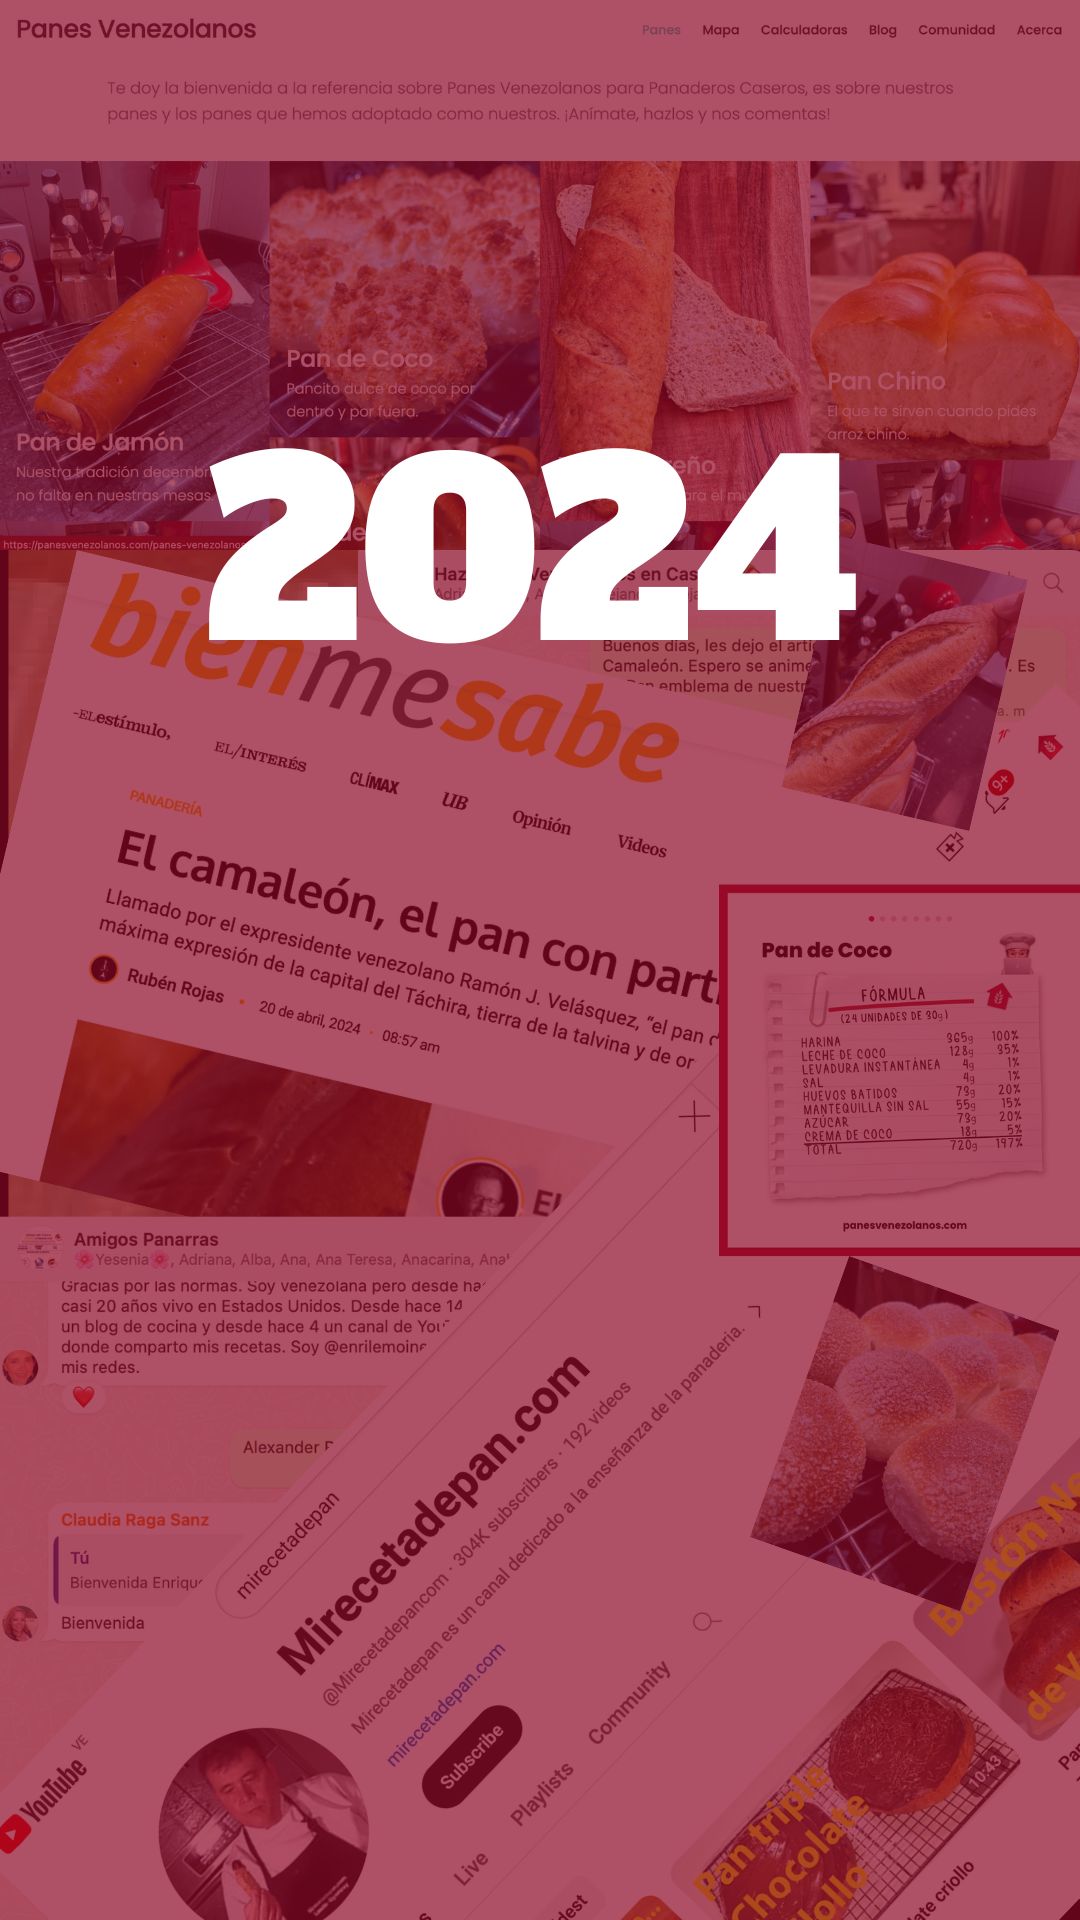 Bitácora de referencias sobre Panadería Venezolana 2024